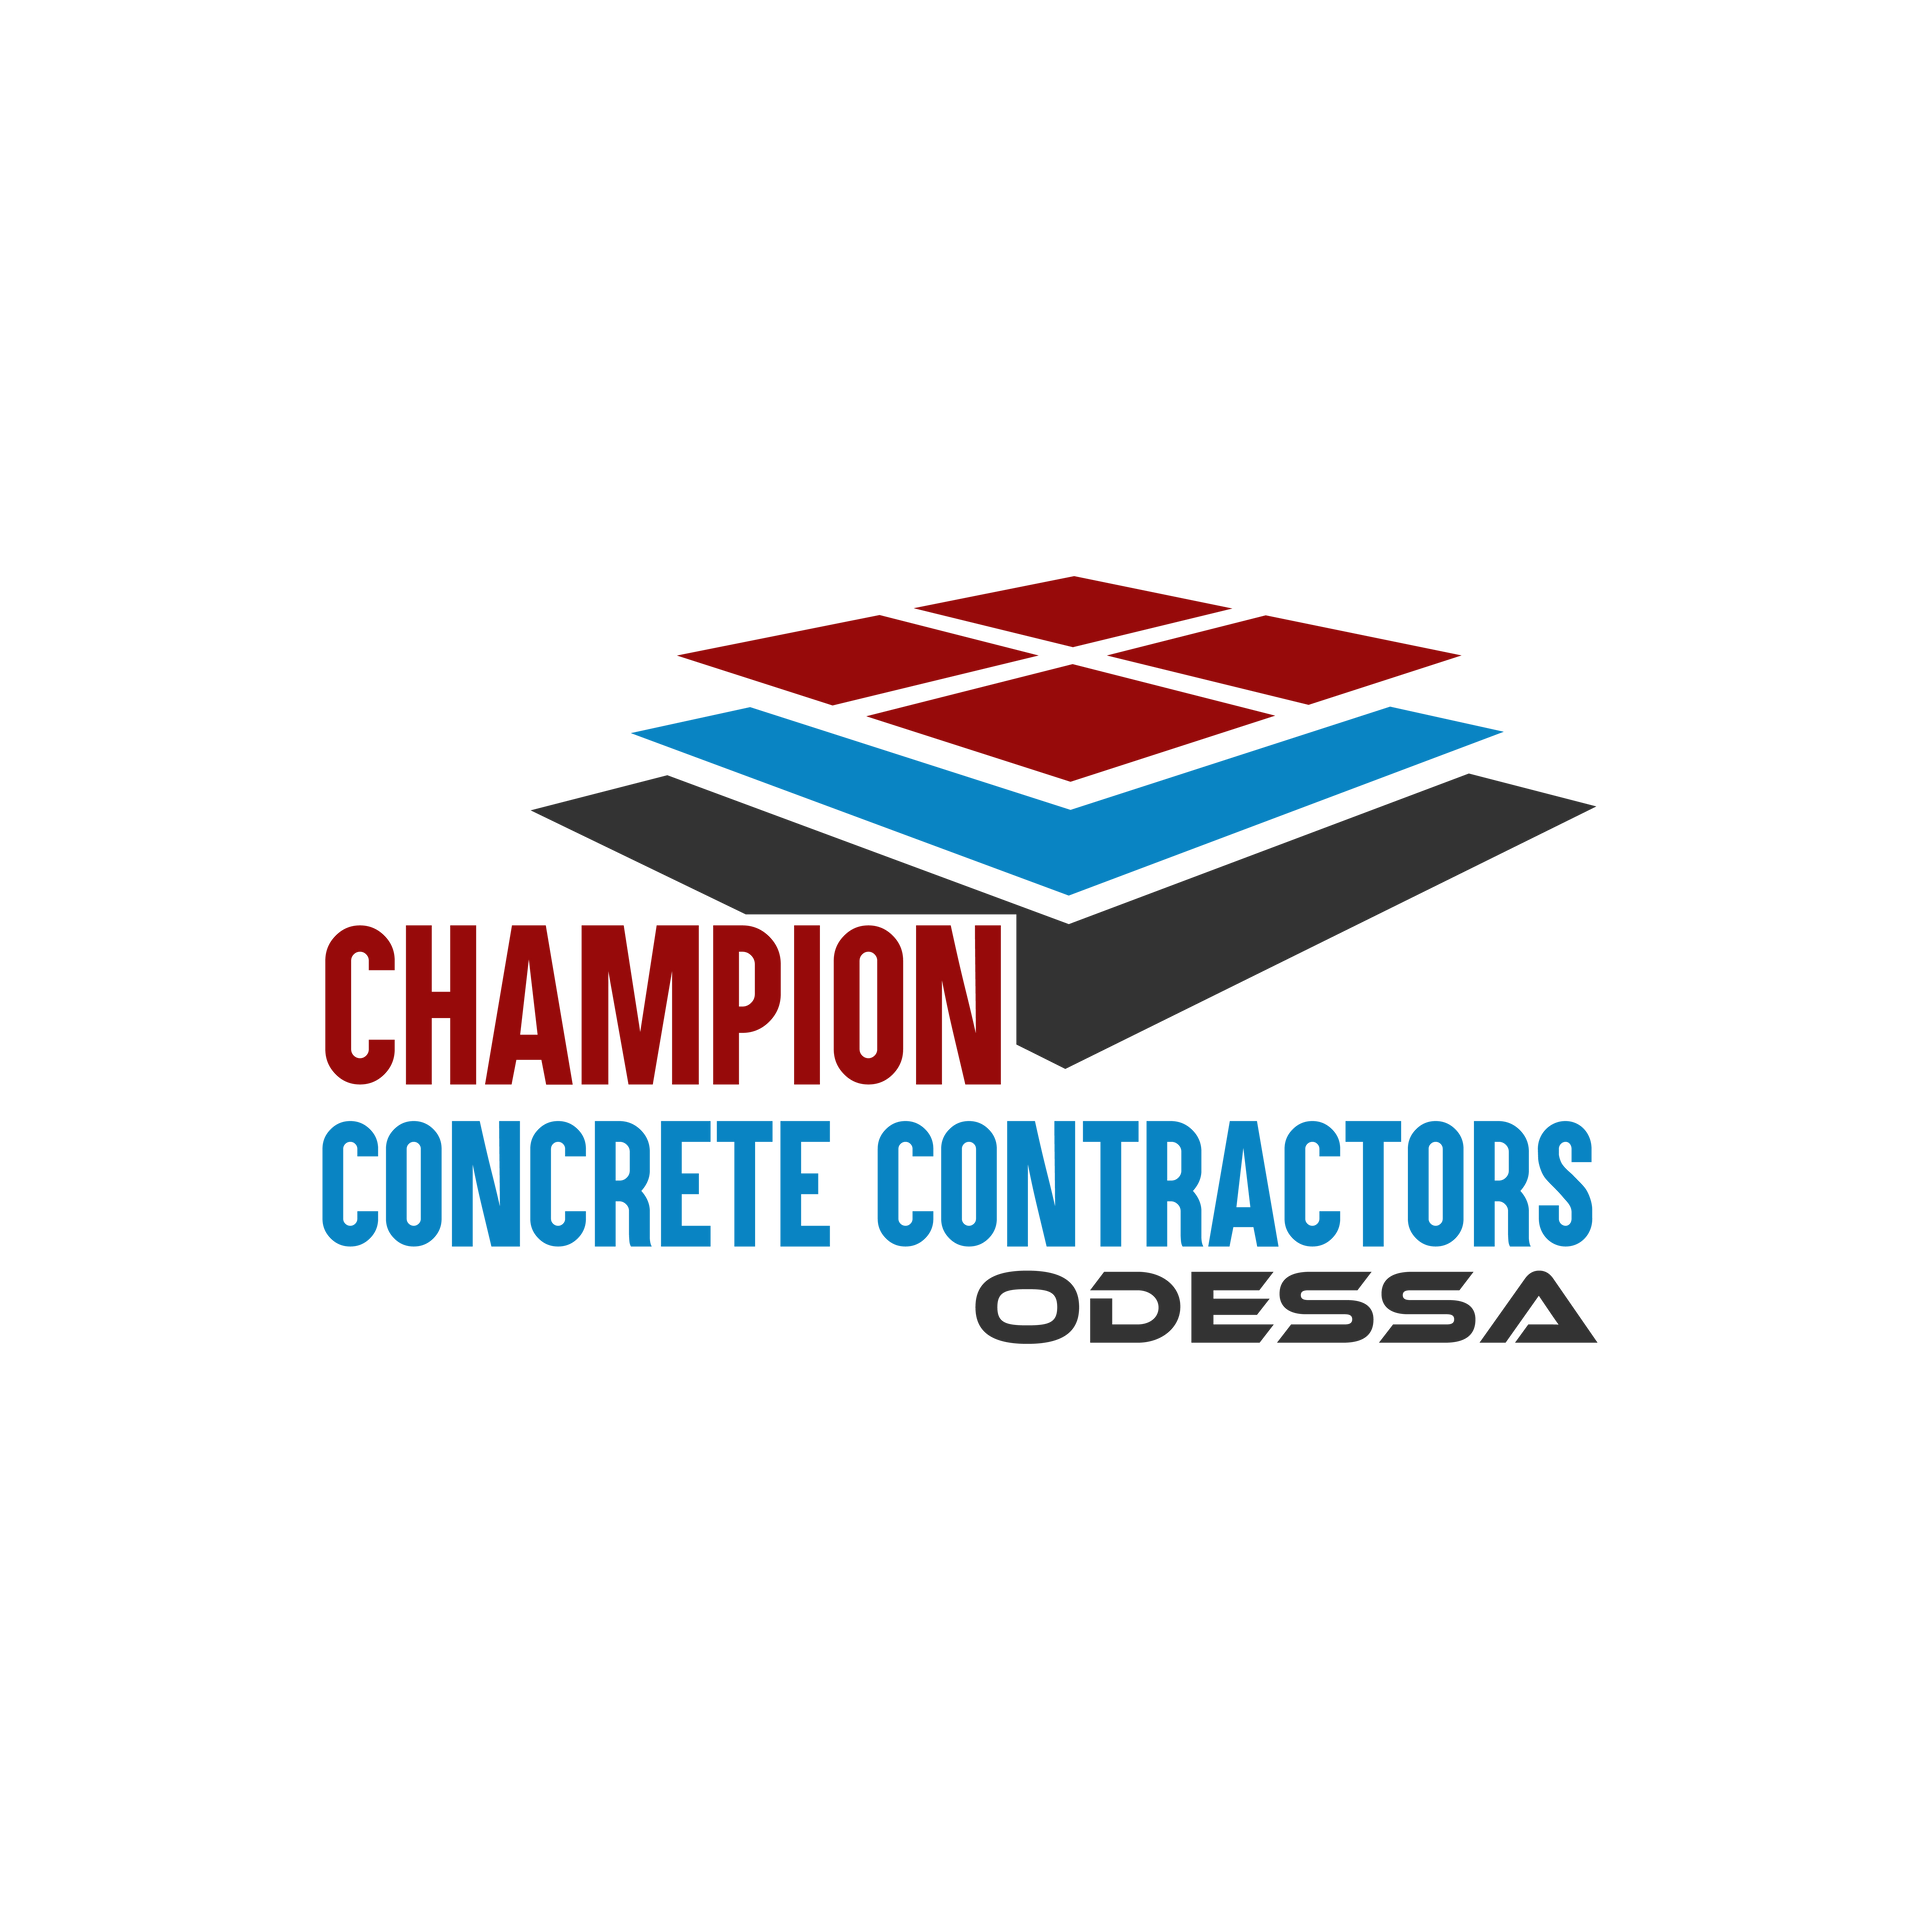 Champion Concrete Contractors Odessa Texas Clear Logo